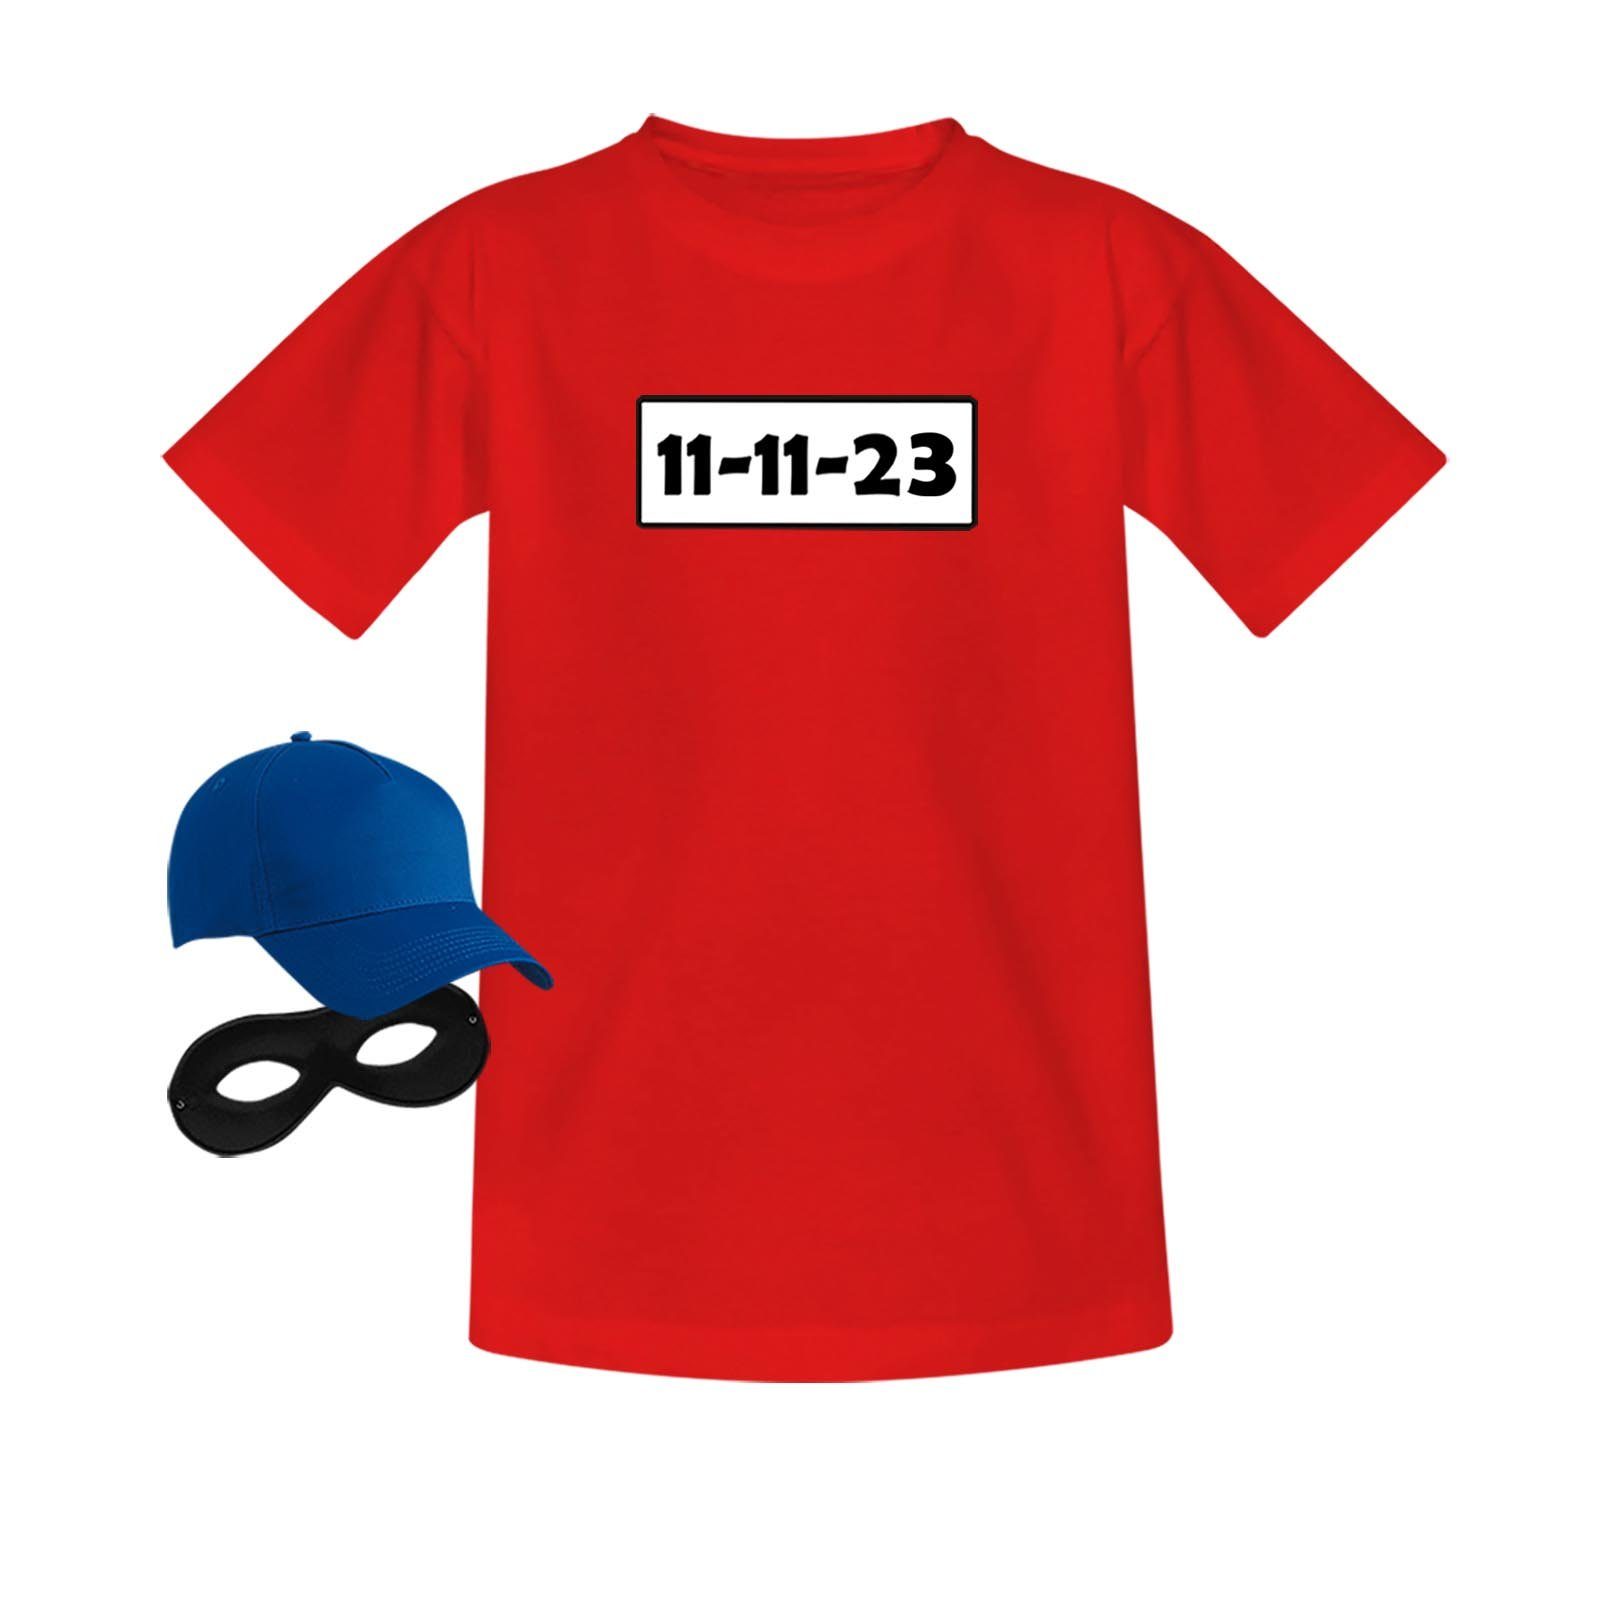 Jimmys Textilfactory Kostüm T-Shirt Panzerknacker Karneval Kostüm-Set Kinder Verkleidung 98-164, Shirt+Cap+Maske